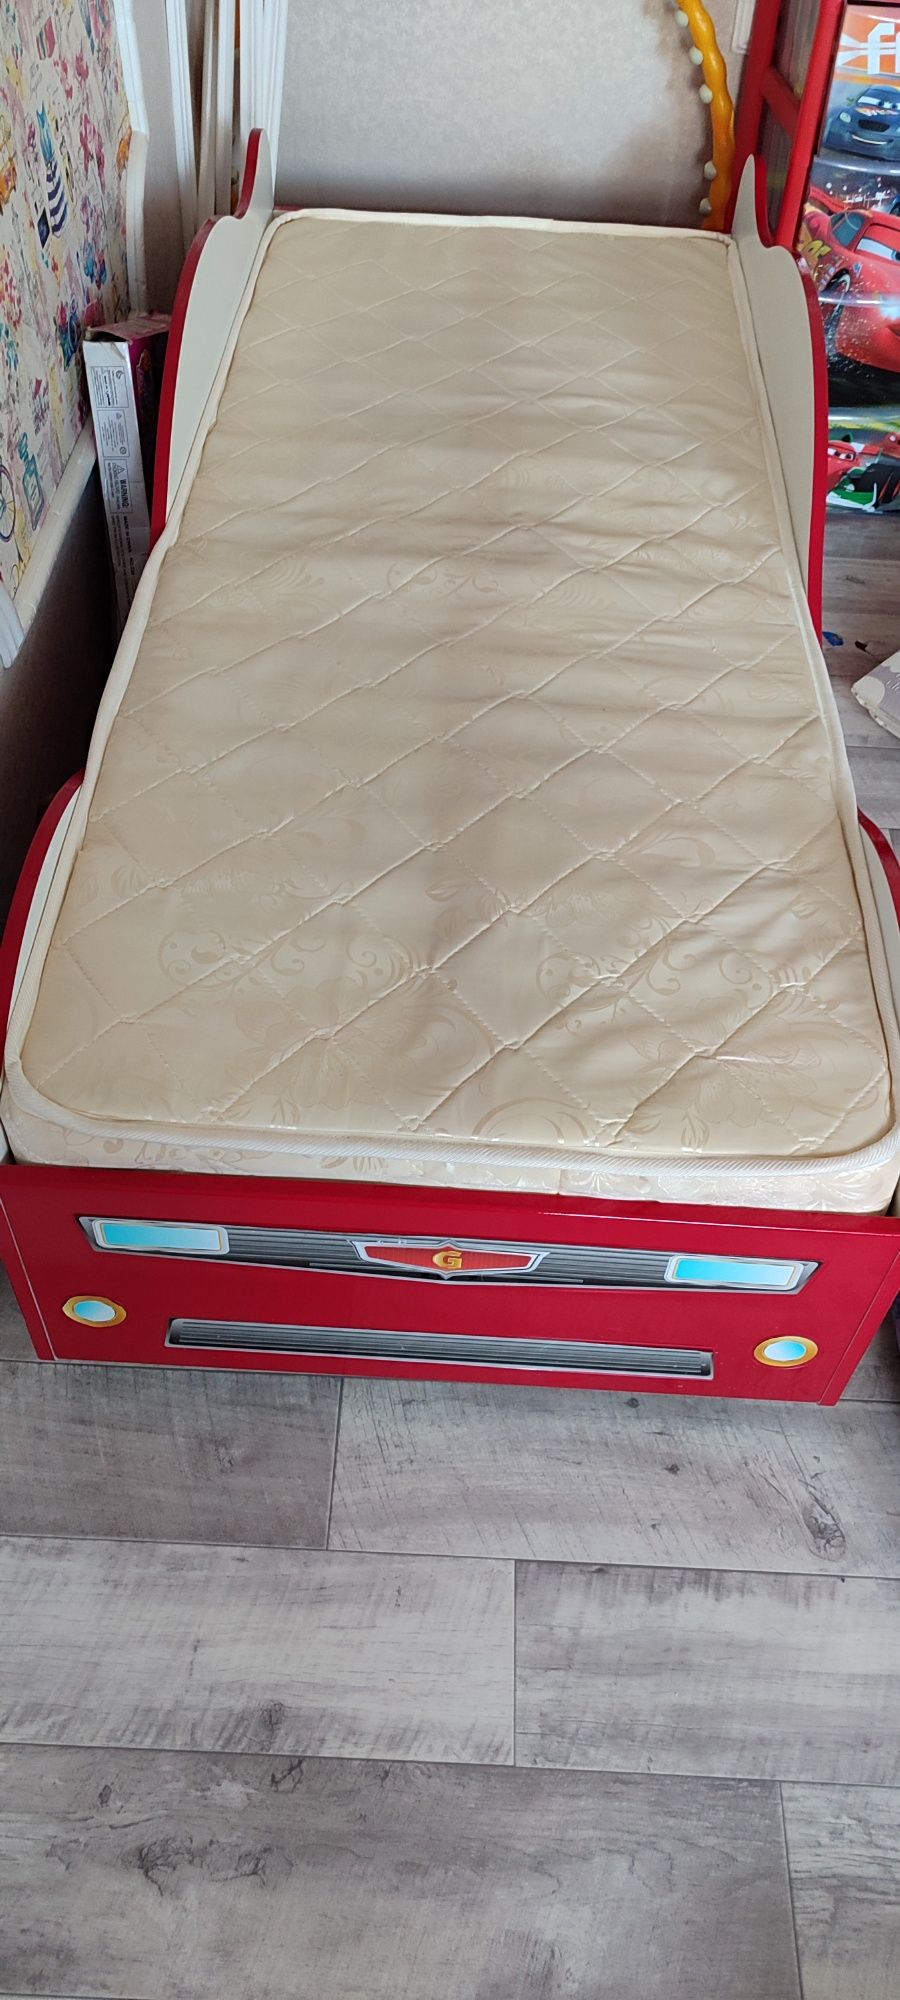 Детская кровать машинка с матрасом , в отличном состоянии